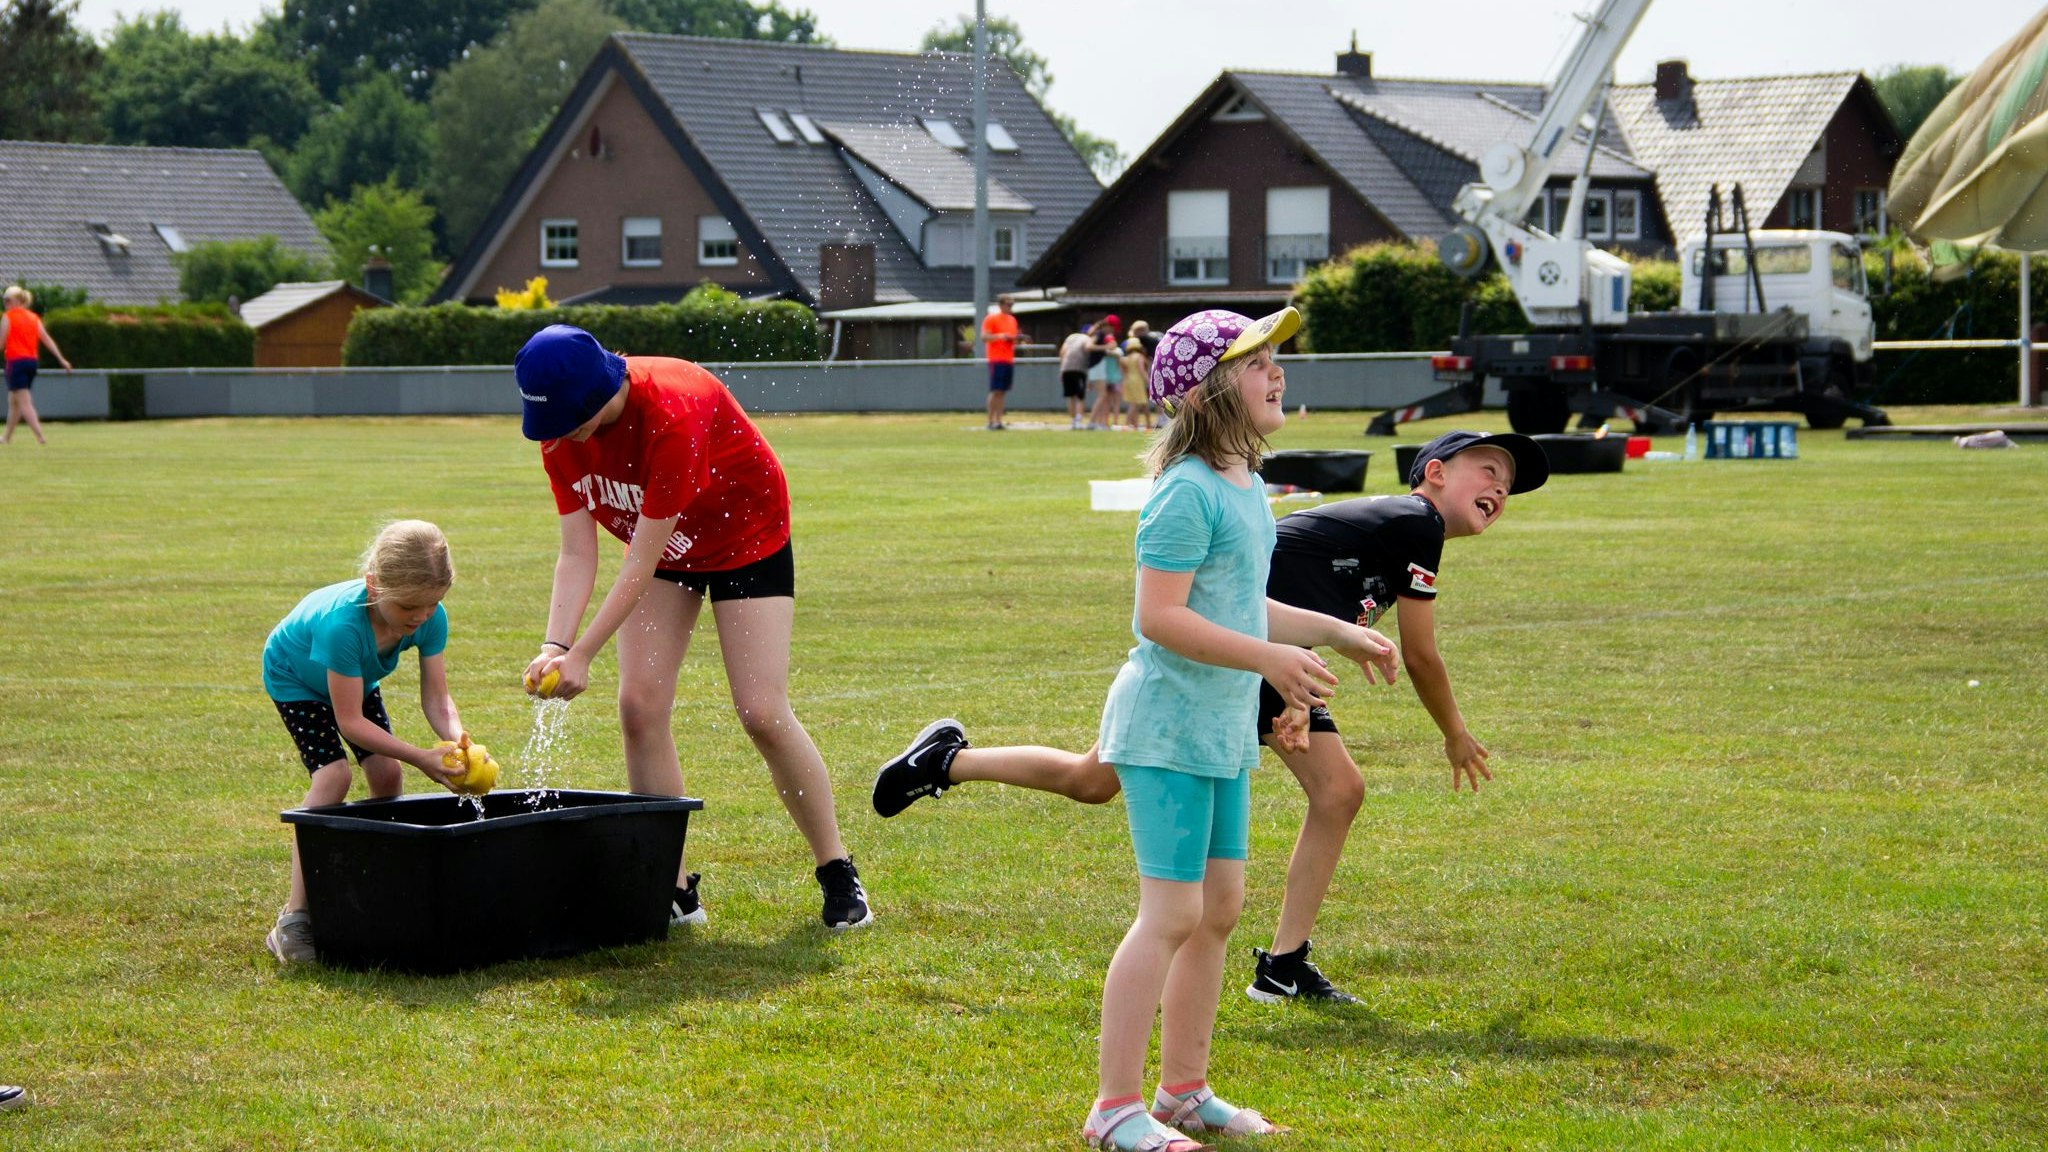 Viel Spaß geboten: Bei der Lagerolympiade konnten sich die Kinder und Jugendlichen bei sommerlichen Temperaturen austoben. Foto: BV Kneheim